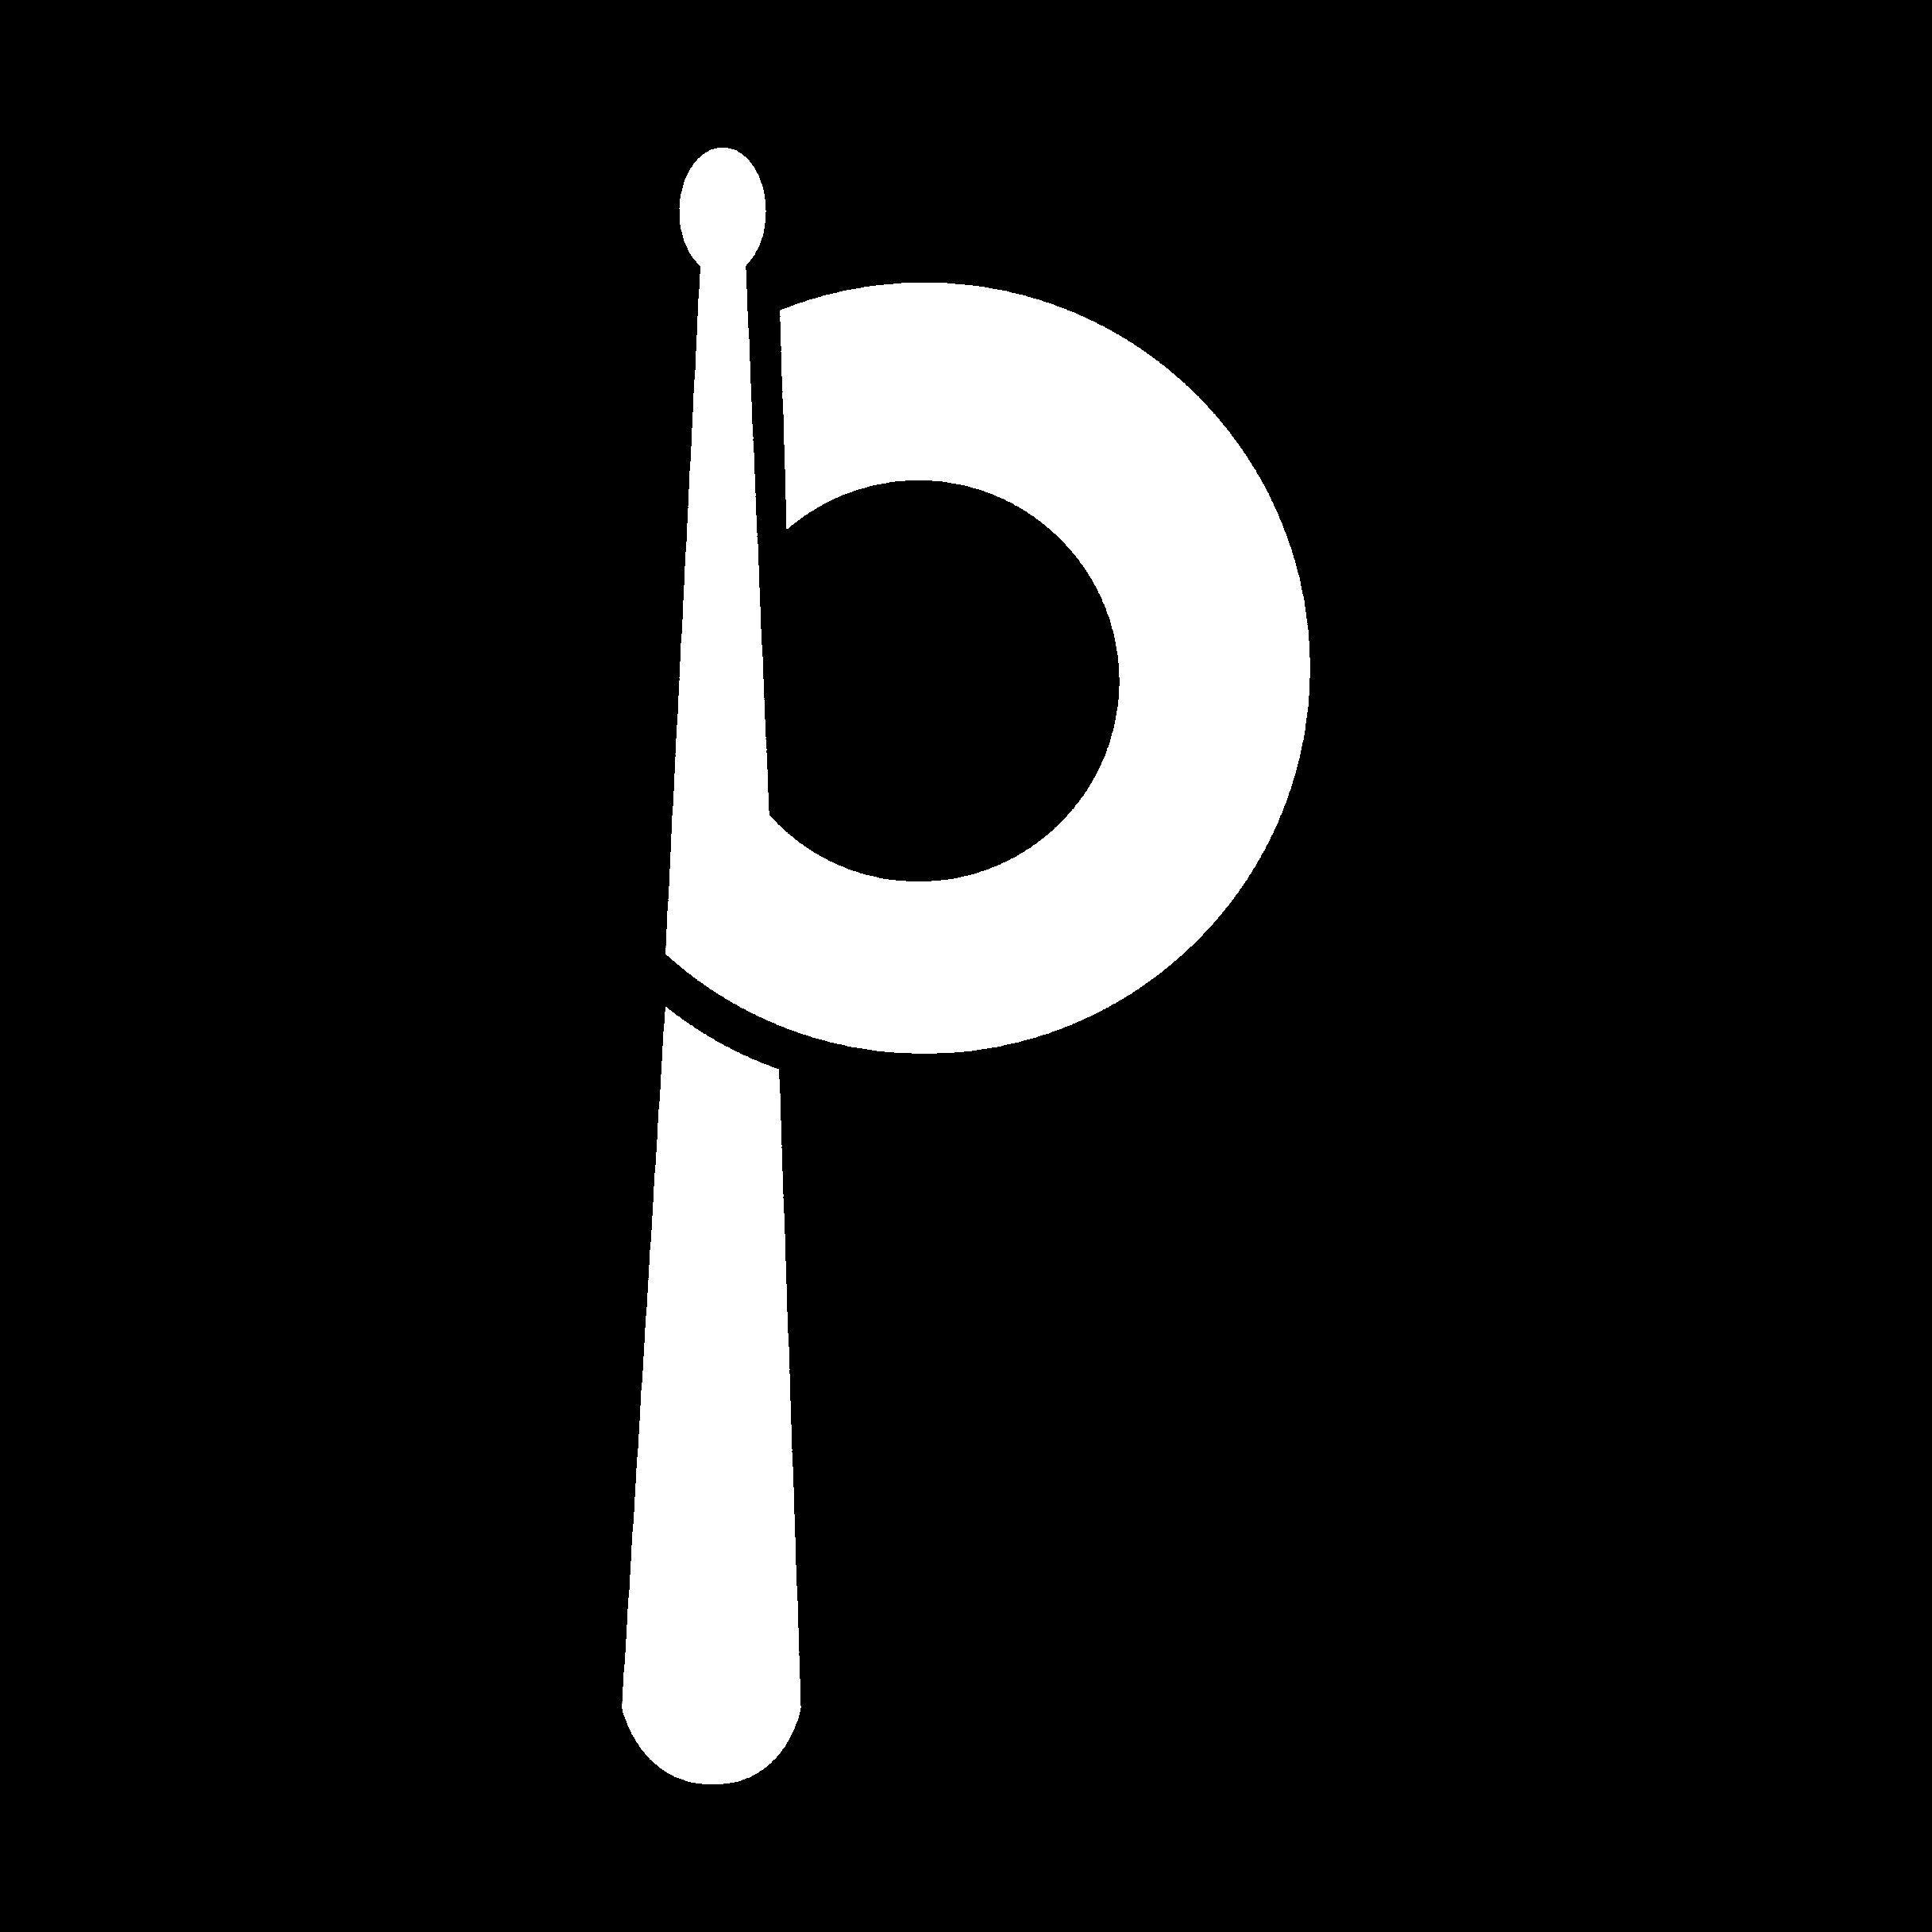 Drummer Logo - drummer logo IL PITO. bing. Drums logo, Music logo, Logos